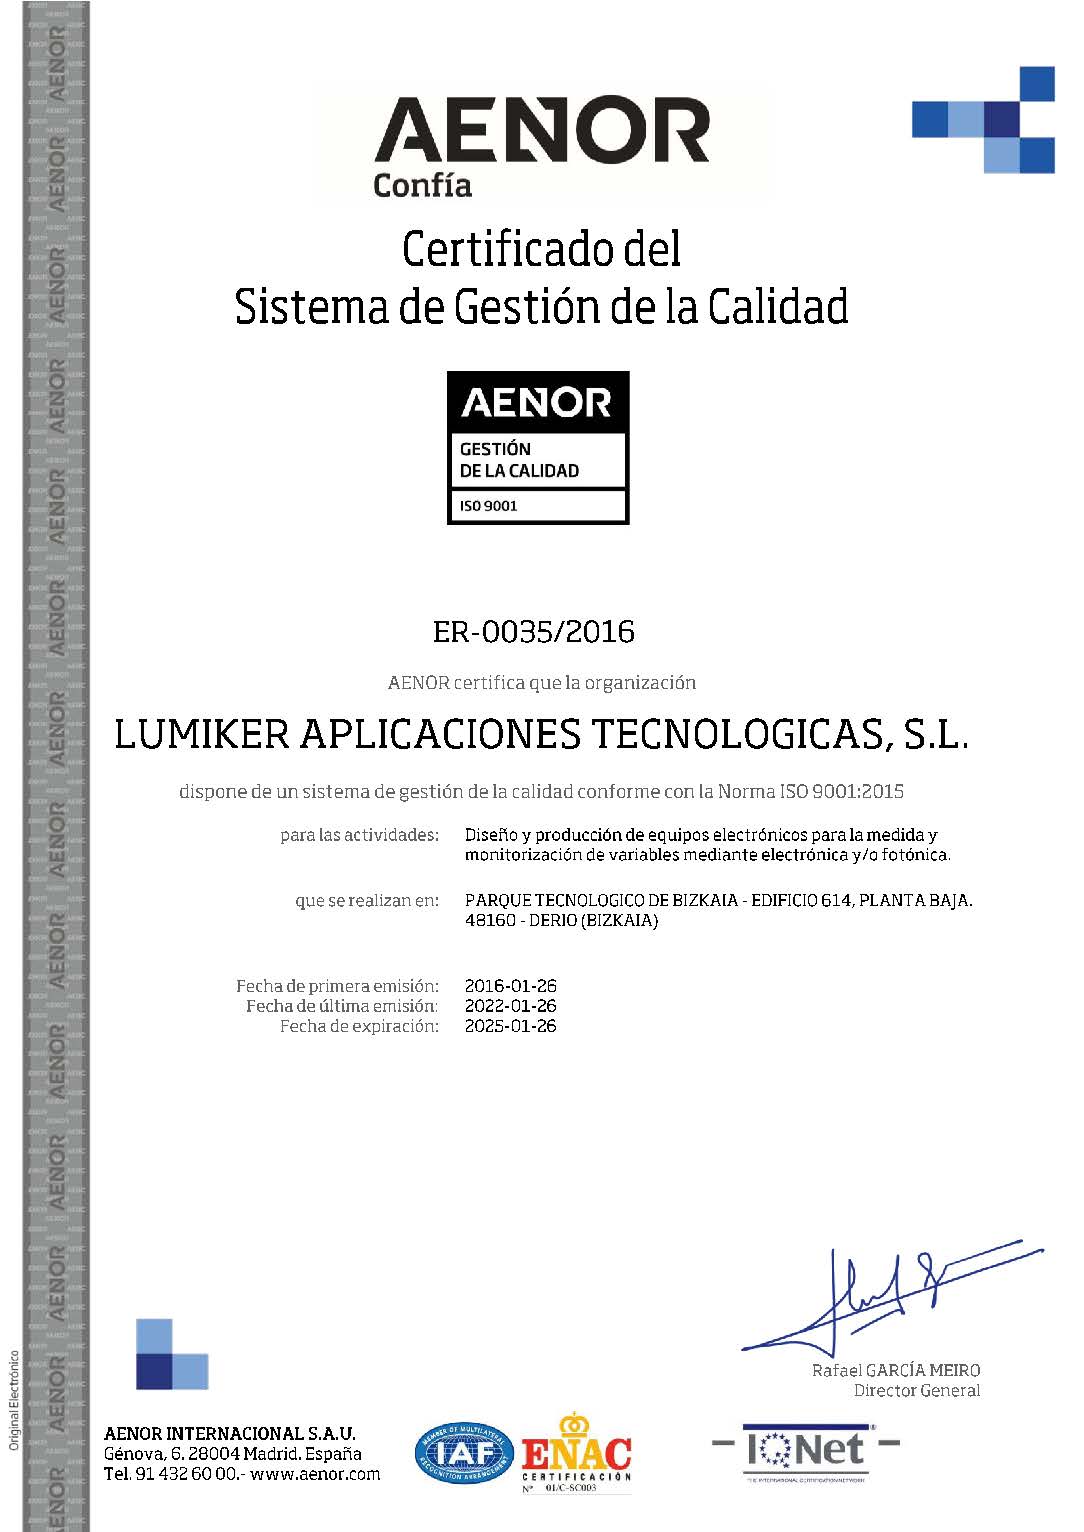 Lumiker: Política de calidad. Certificado ISO 9001-2015